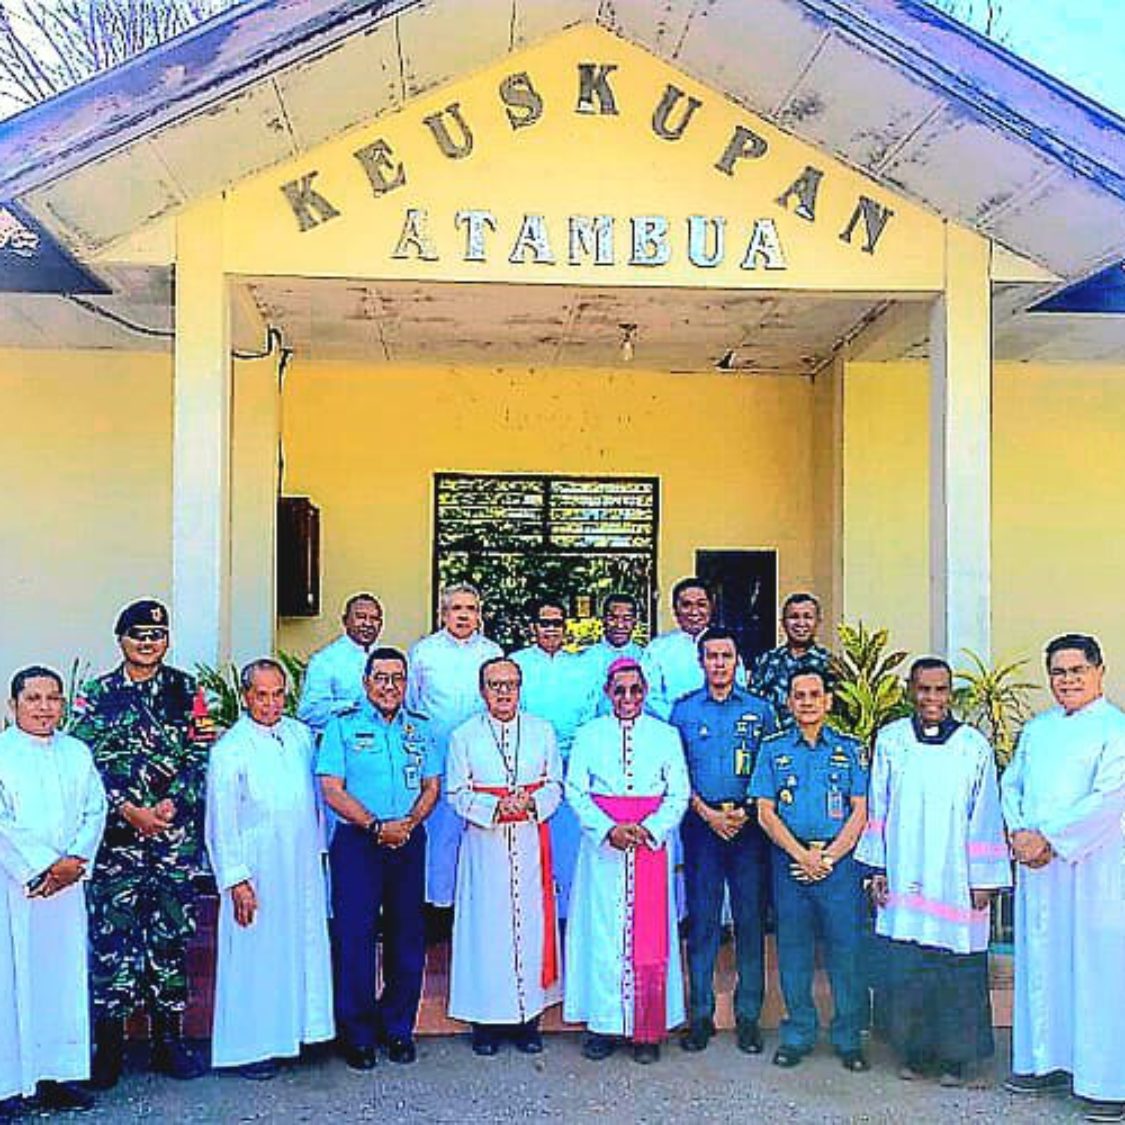 Kunjungan Uskup Ordinariat Militer Indonesia di Atambua Perkuat Iman dan Kedaulatan NKRI